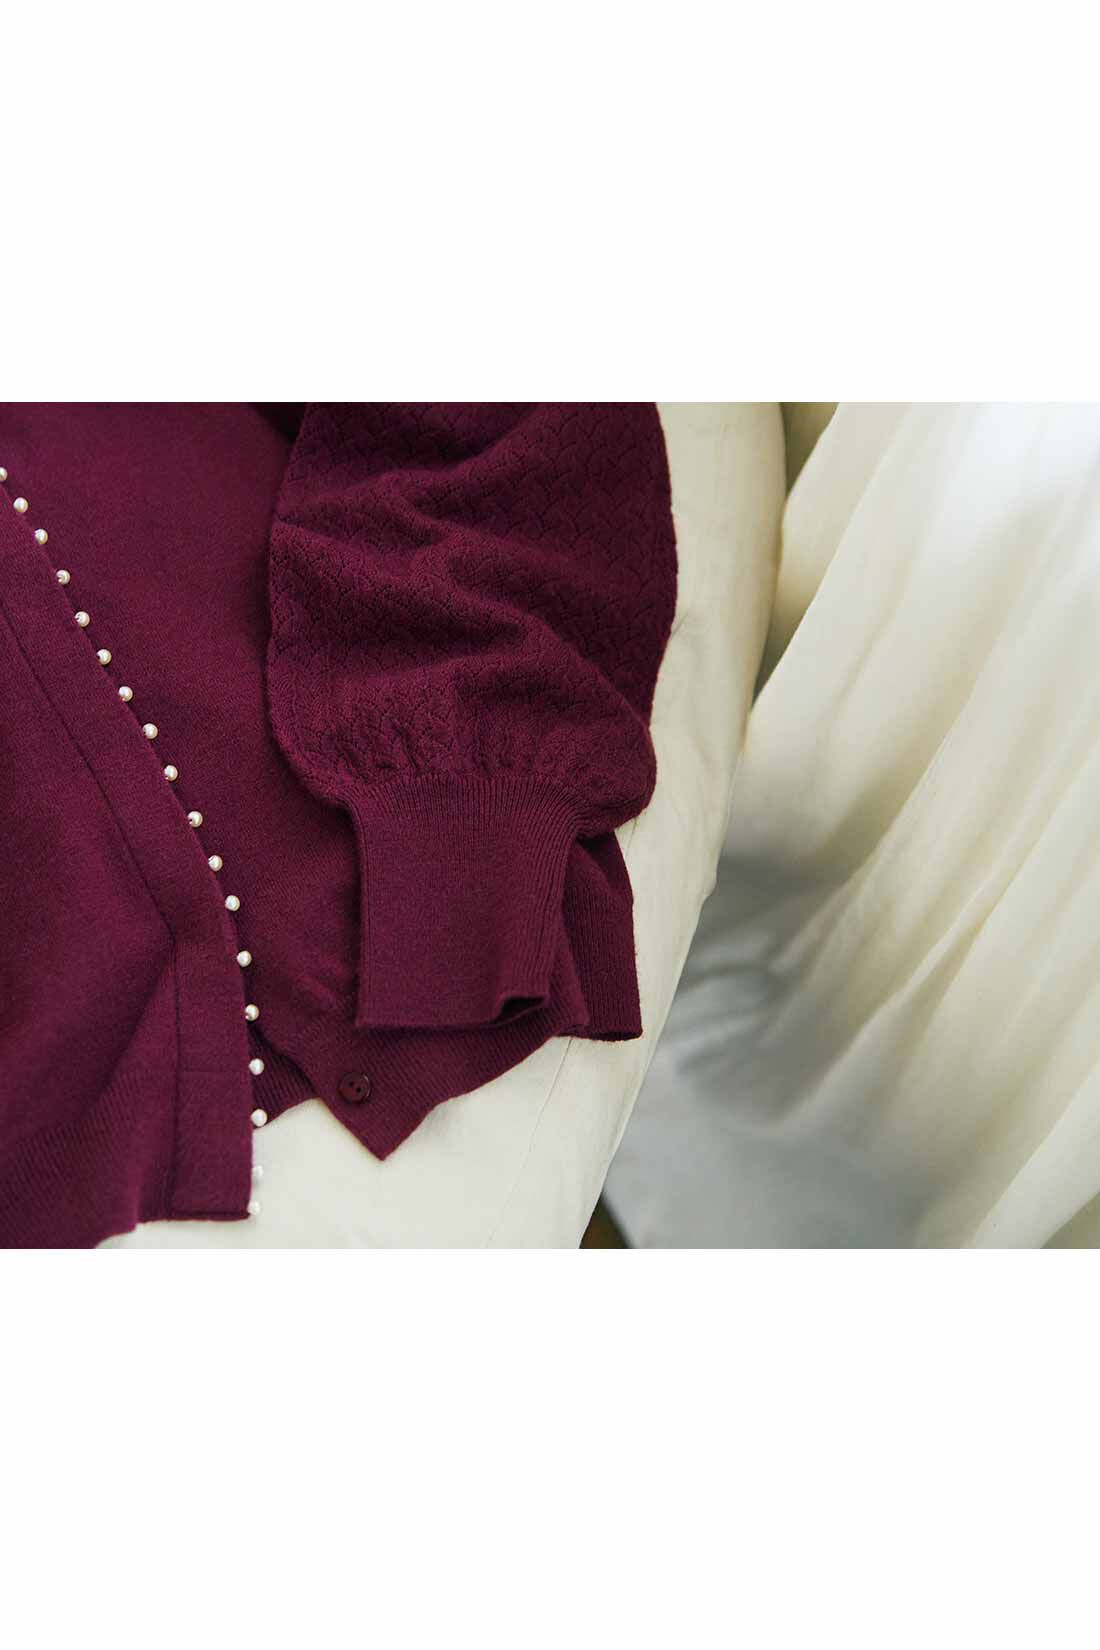 IEDIT[イディット]　アクセサリーみたいなミニパールが上品な 柄編み袖のカーディガン〈グレー〉|※お届けするカラーとは異なります。